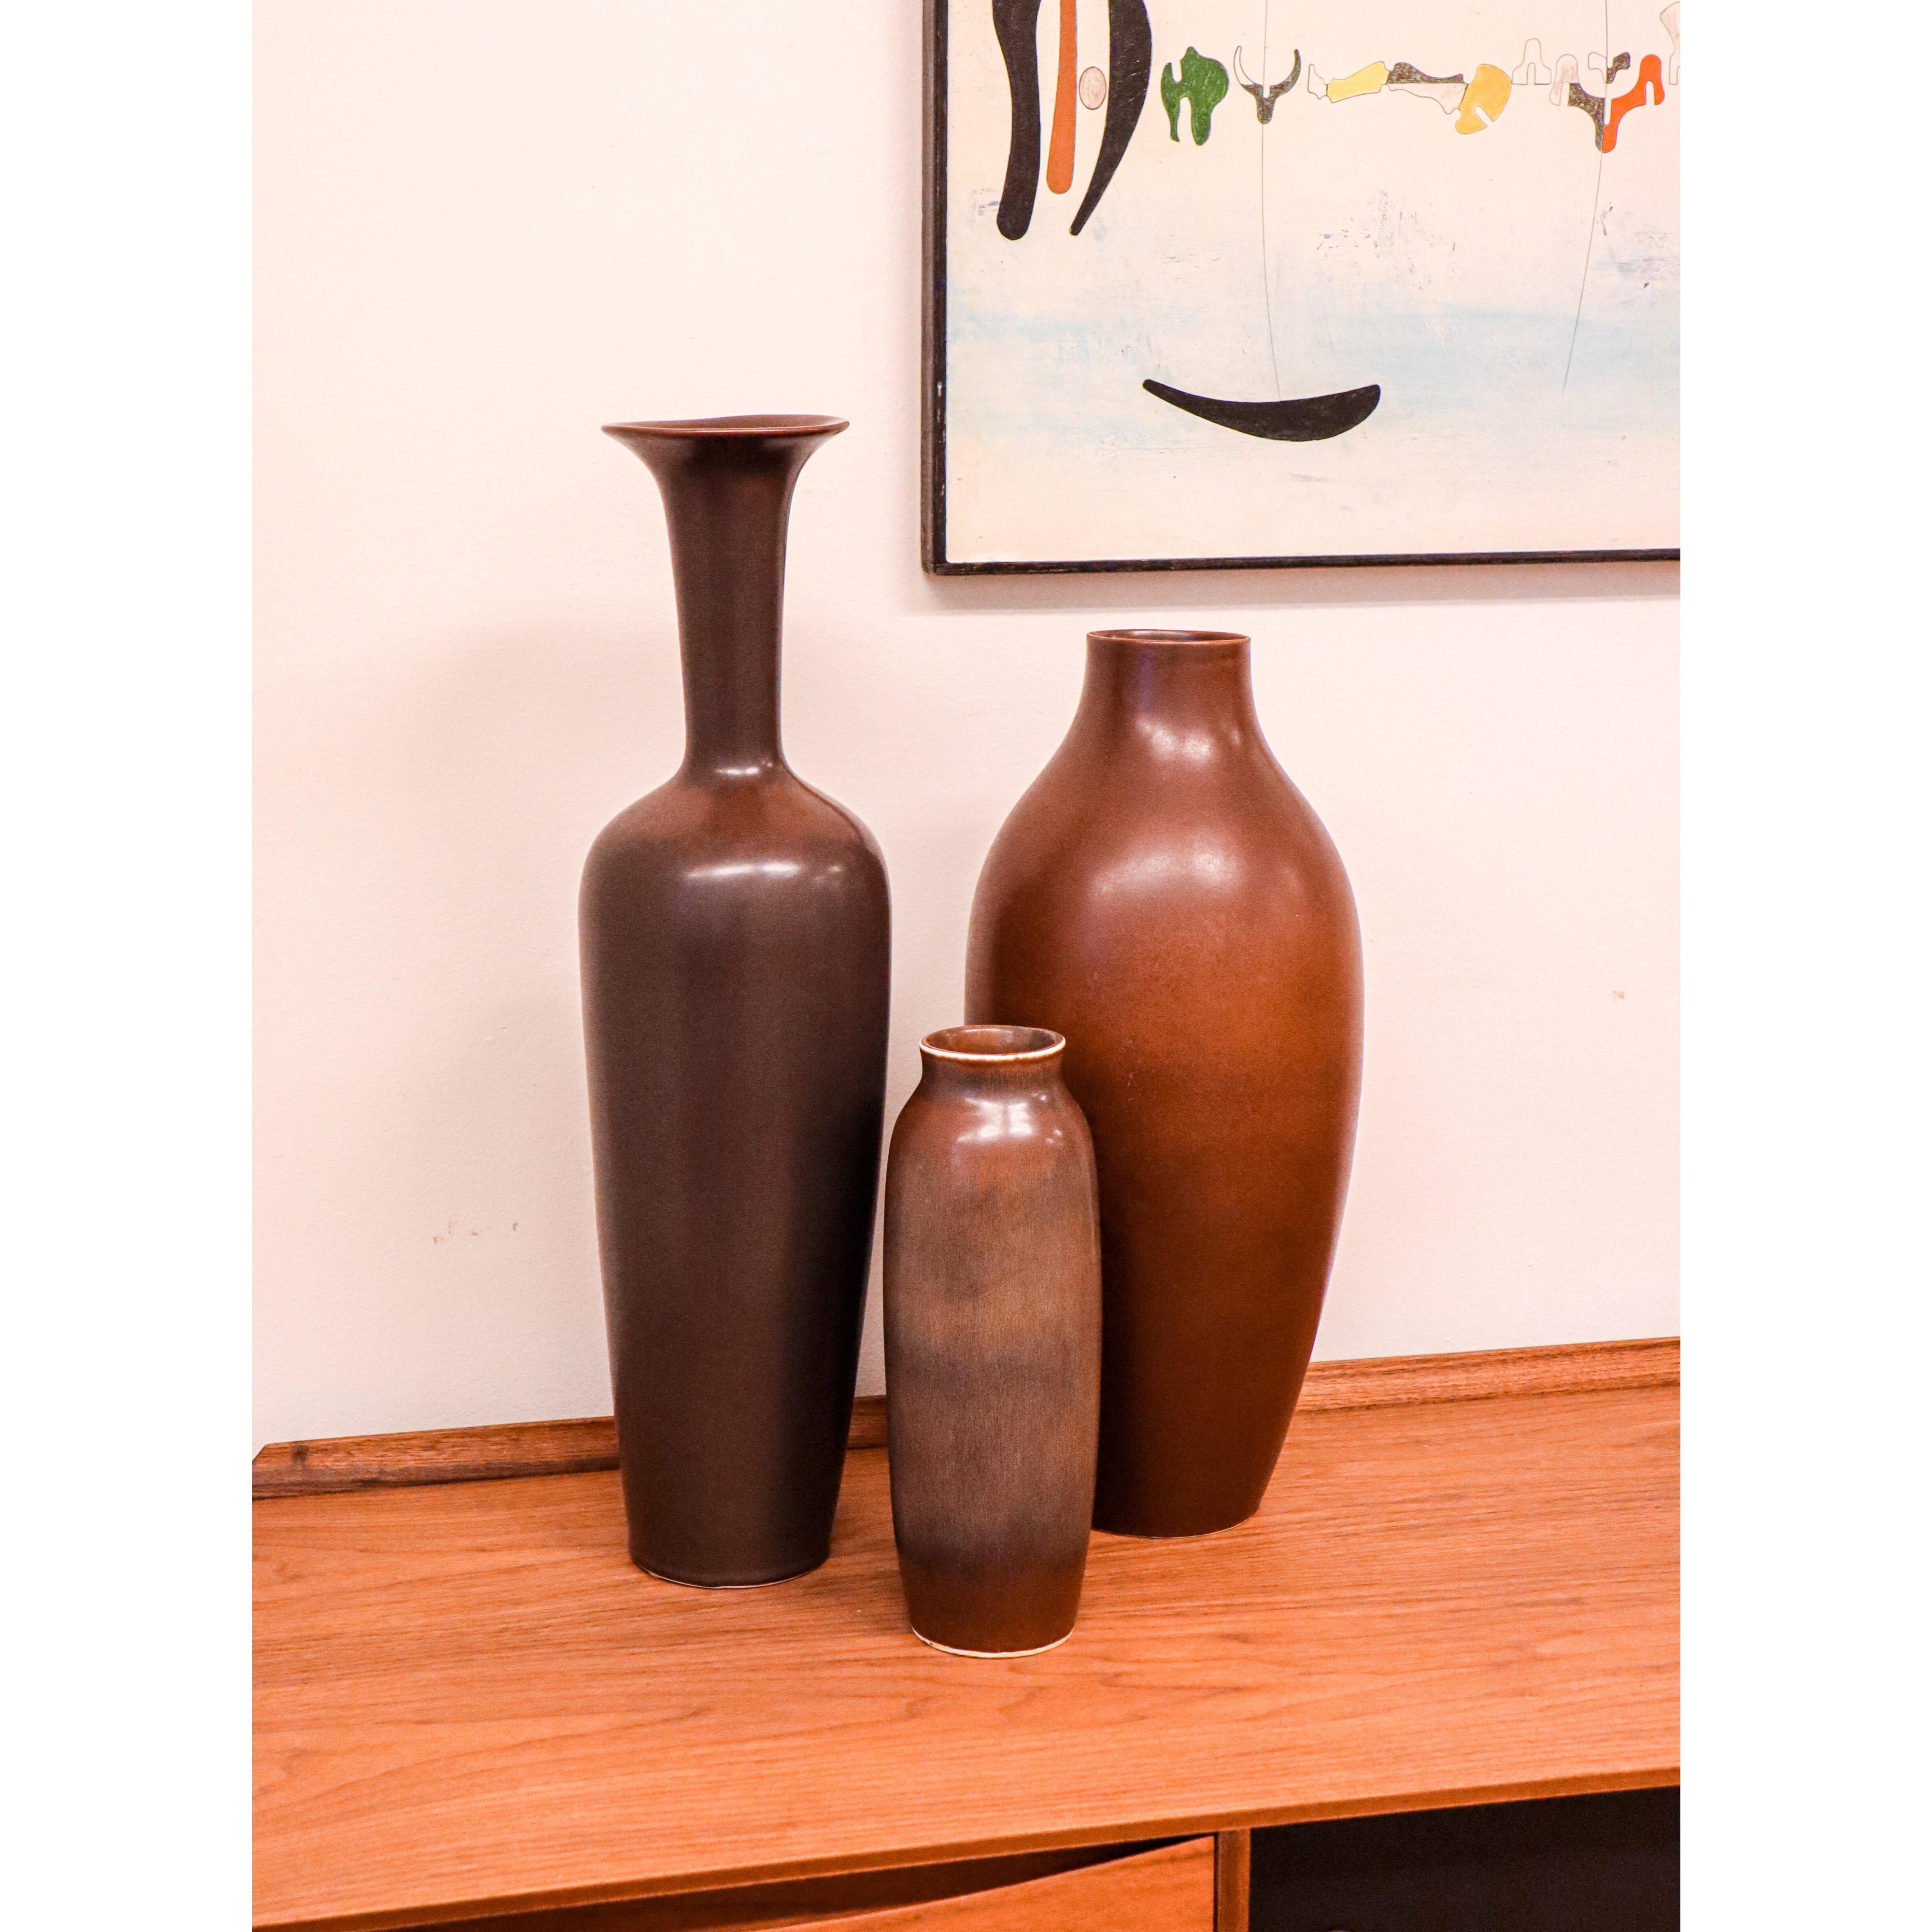 Un grand vase de sol en céramique brun foncé, conçu par Gunnar Nylund chez Rörstrand, d'une hauteur de 62,5 cm. Il est en excellent état et marqué comme étant de 1ère qualité.

Gunnar Nylund est né à Paris en 1904 de parents sculpteurs et designers.